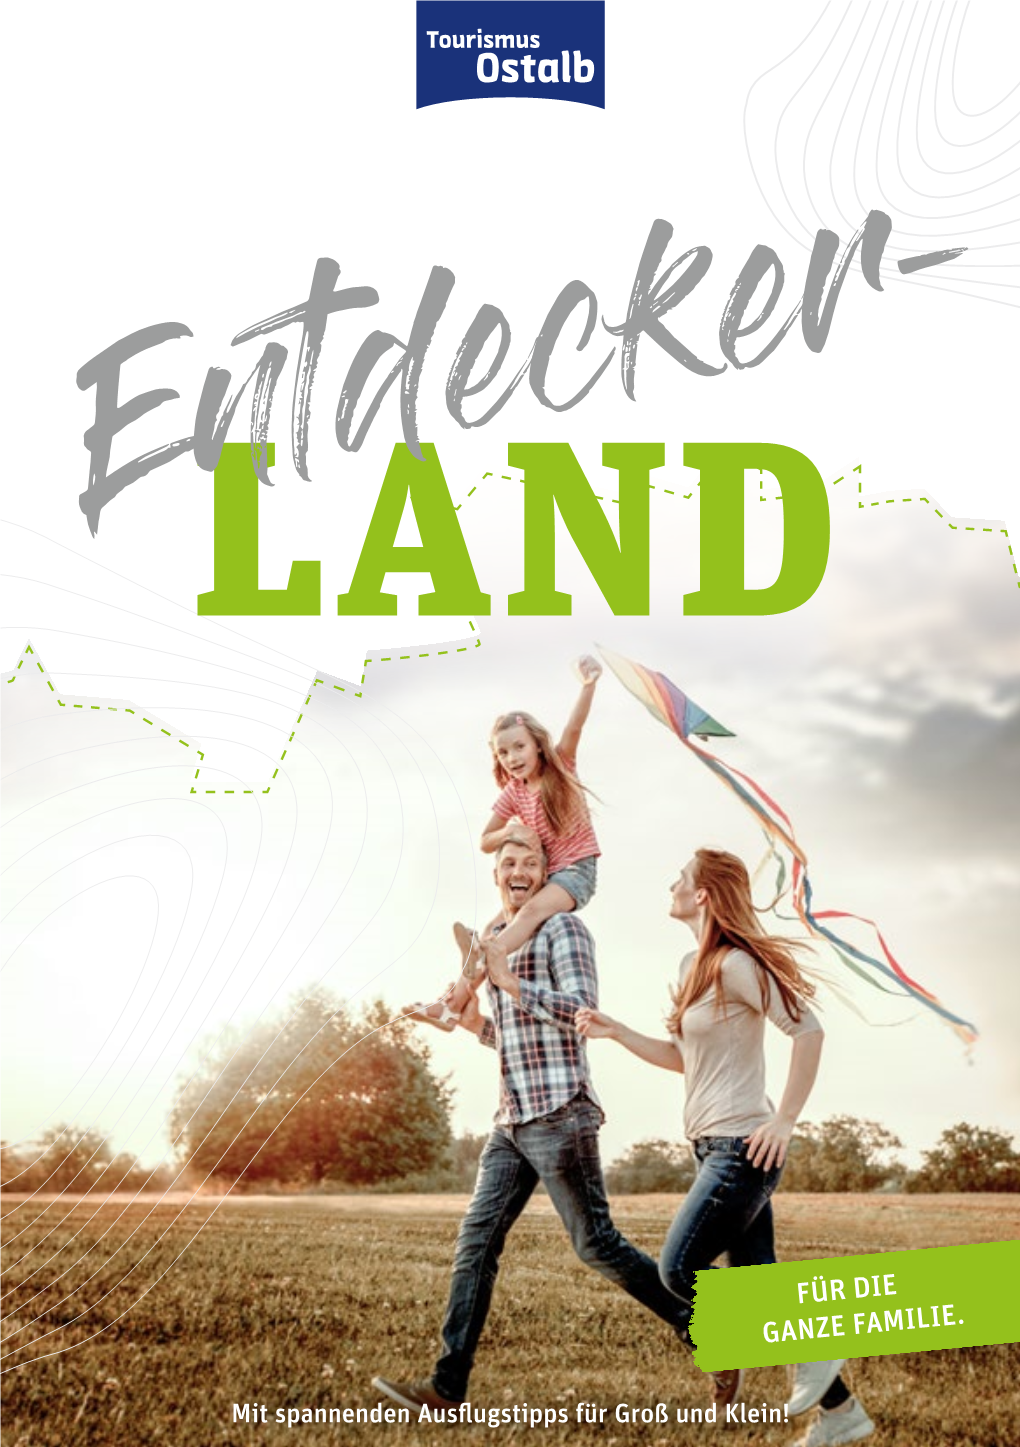 Entdeckerland A5 06 2019.Pdf